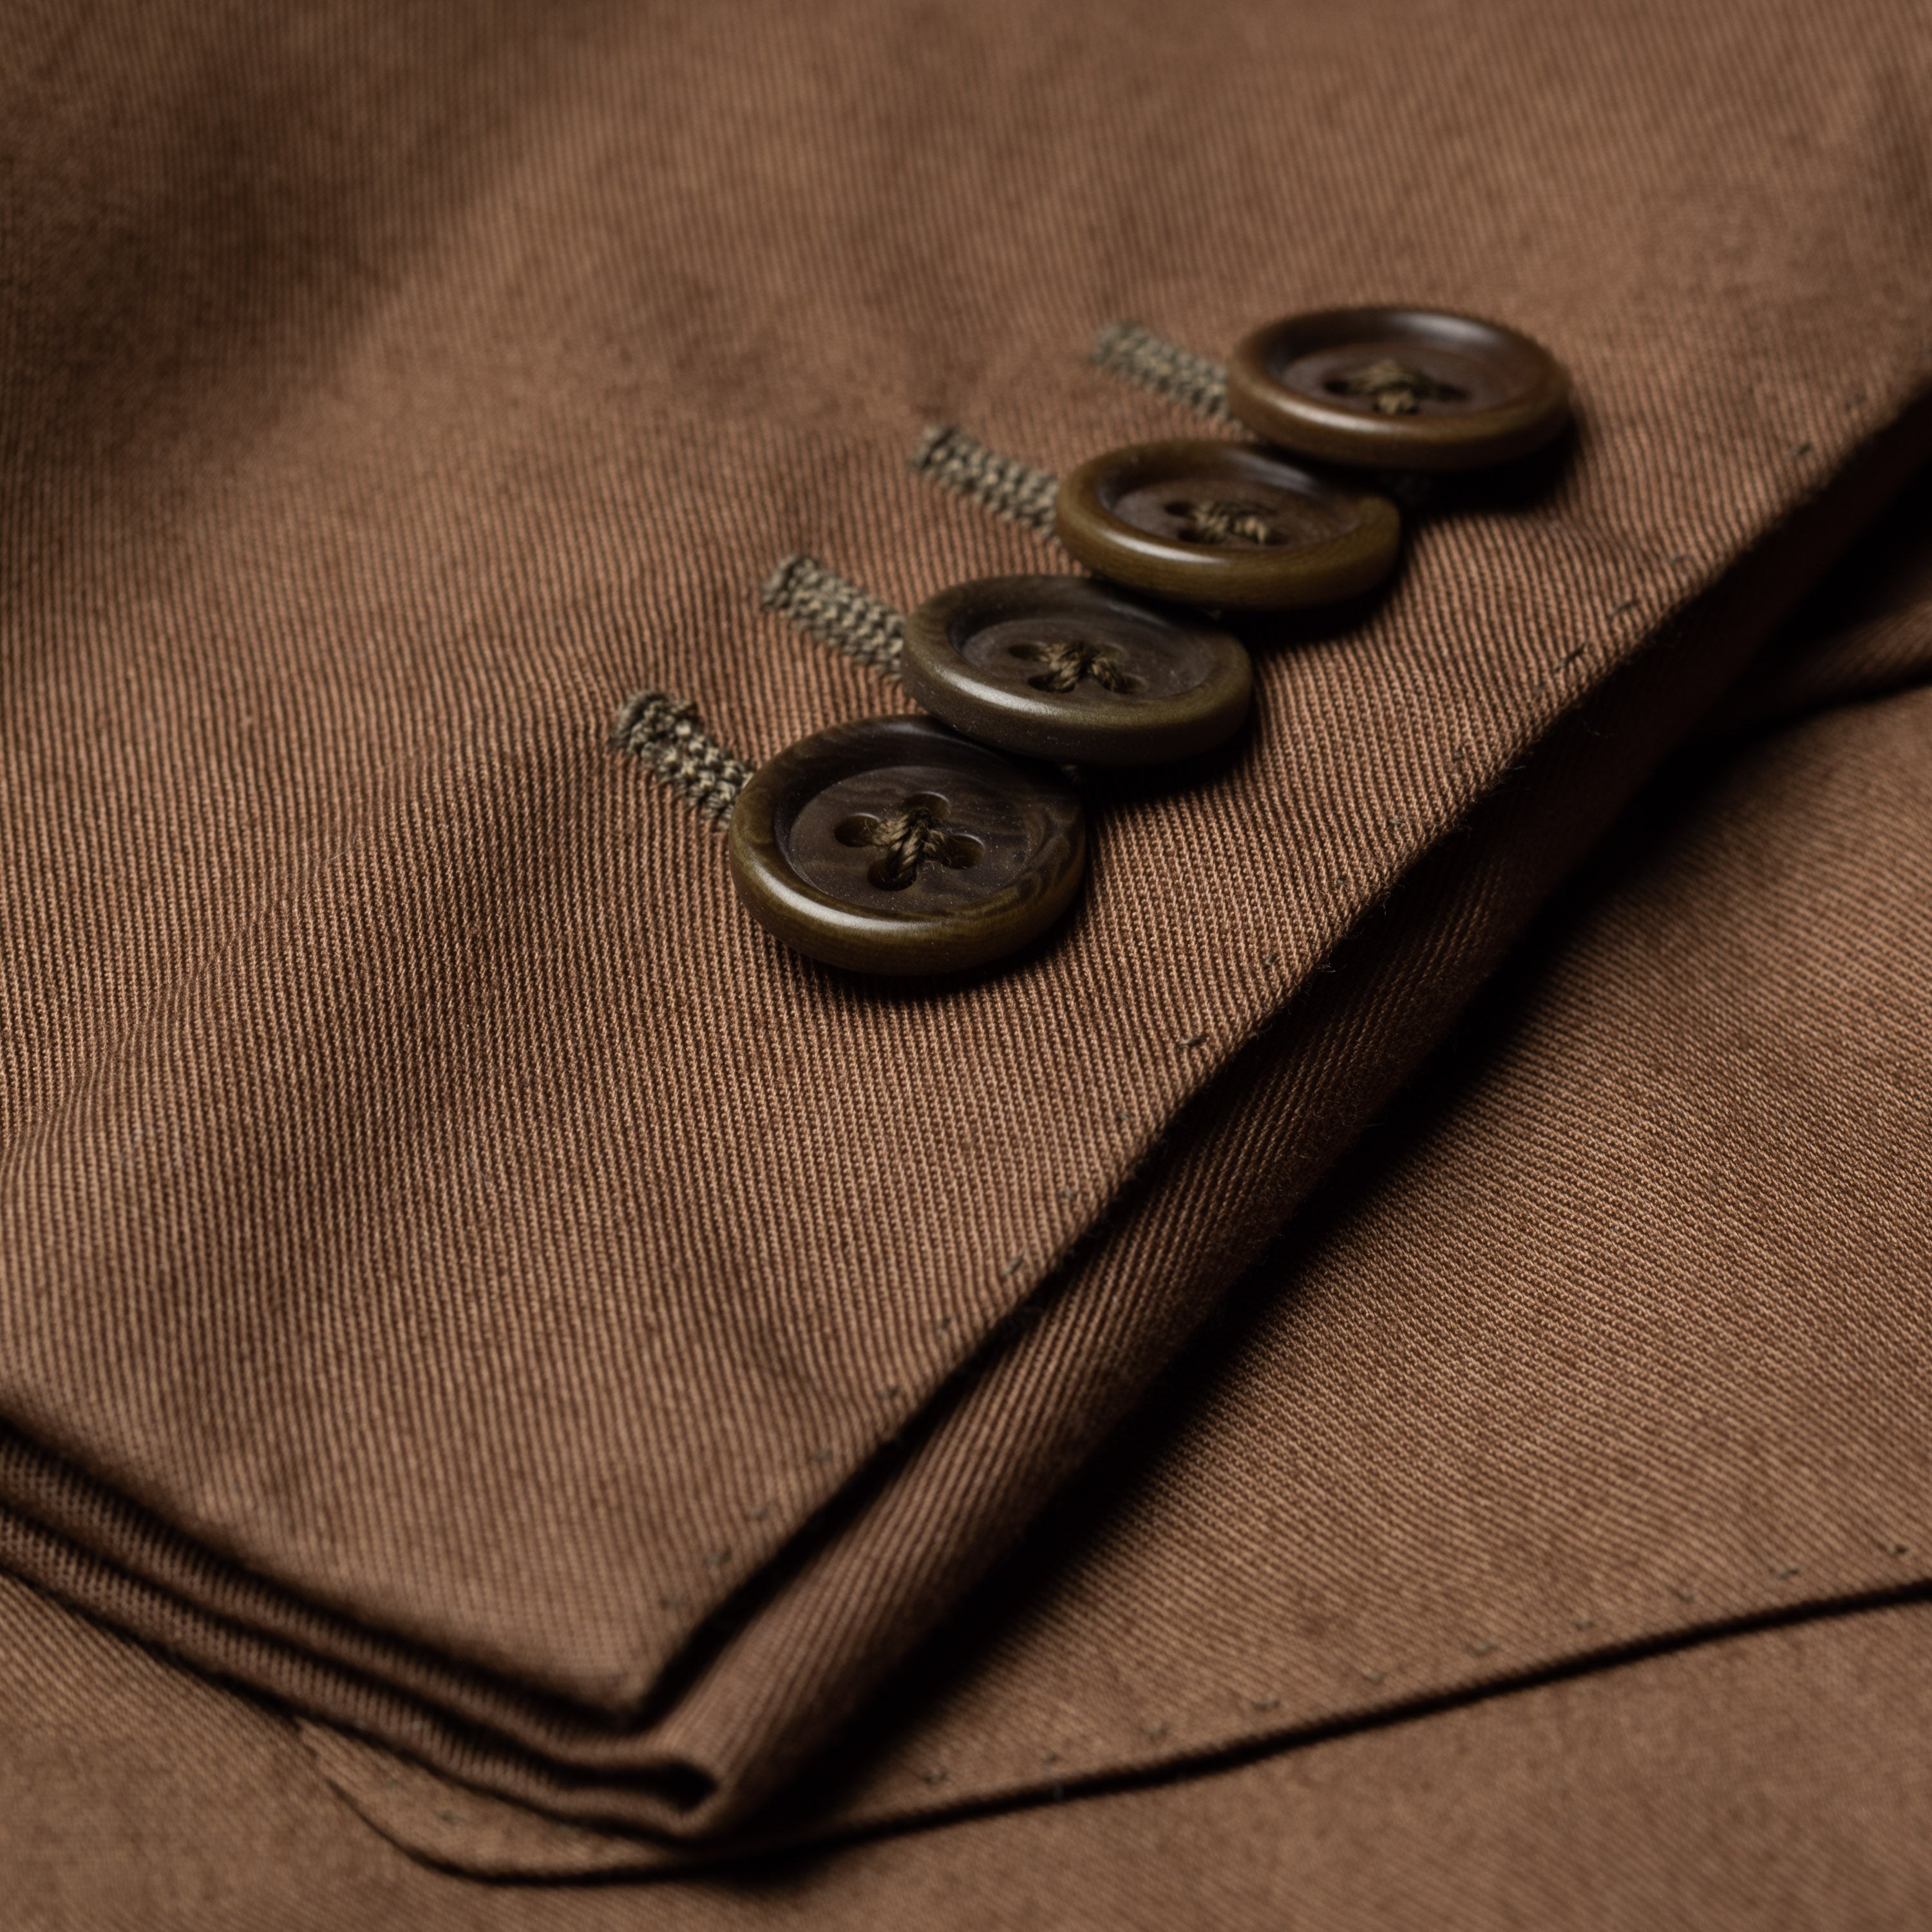 SARTORIA CASTANGIA Hand Made Brown Cotton Suit EU 48 NEW US 38 CASTANGIA